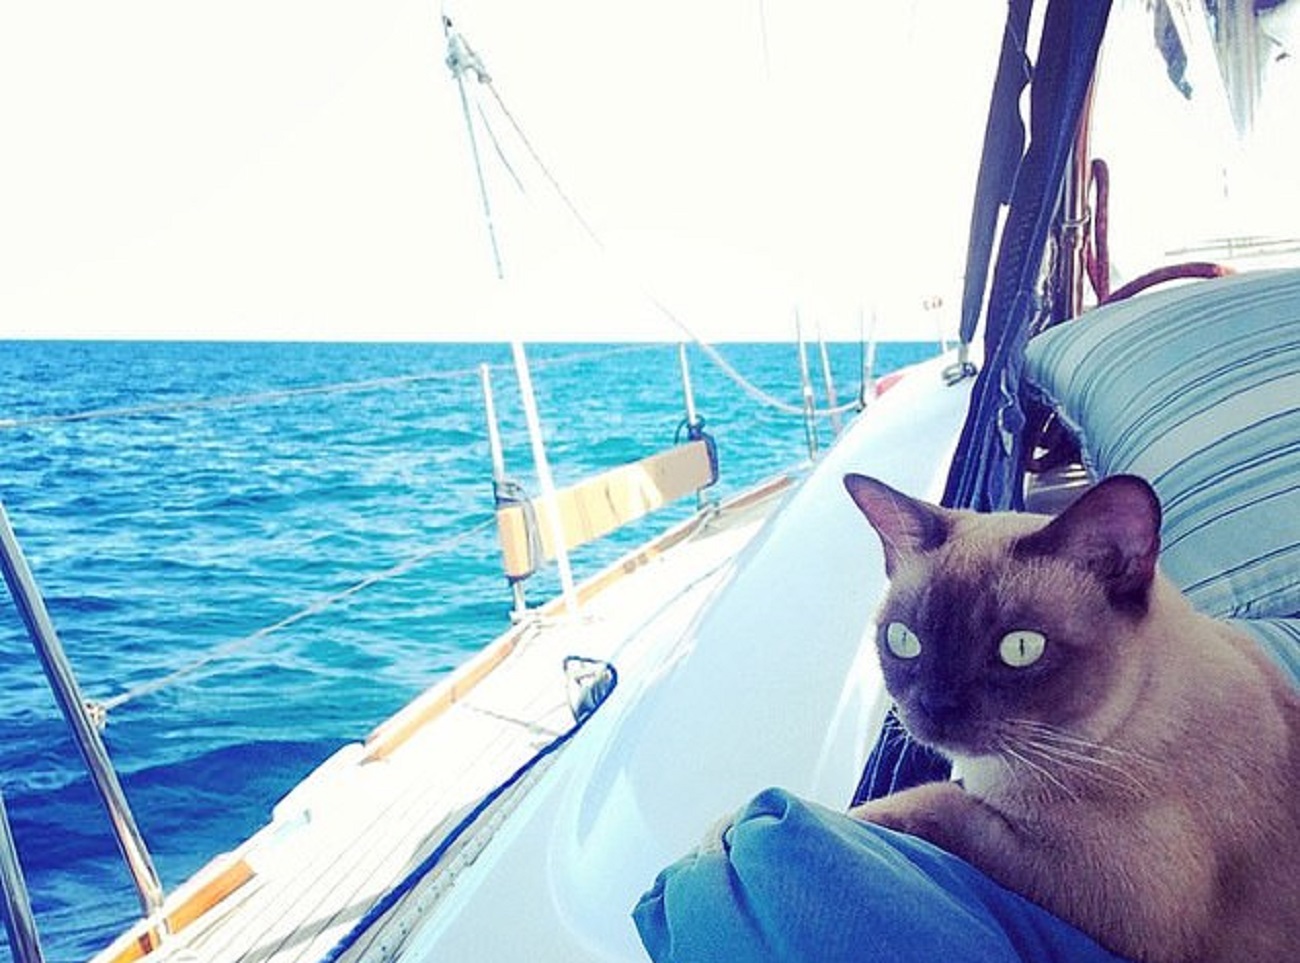 Кошка-мореход покорила Instagram фотографиями своих приключений